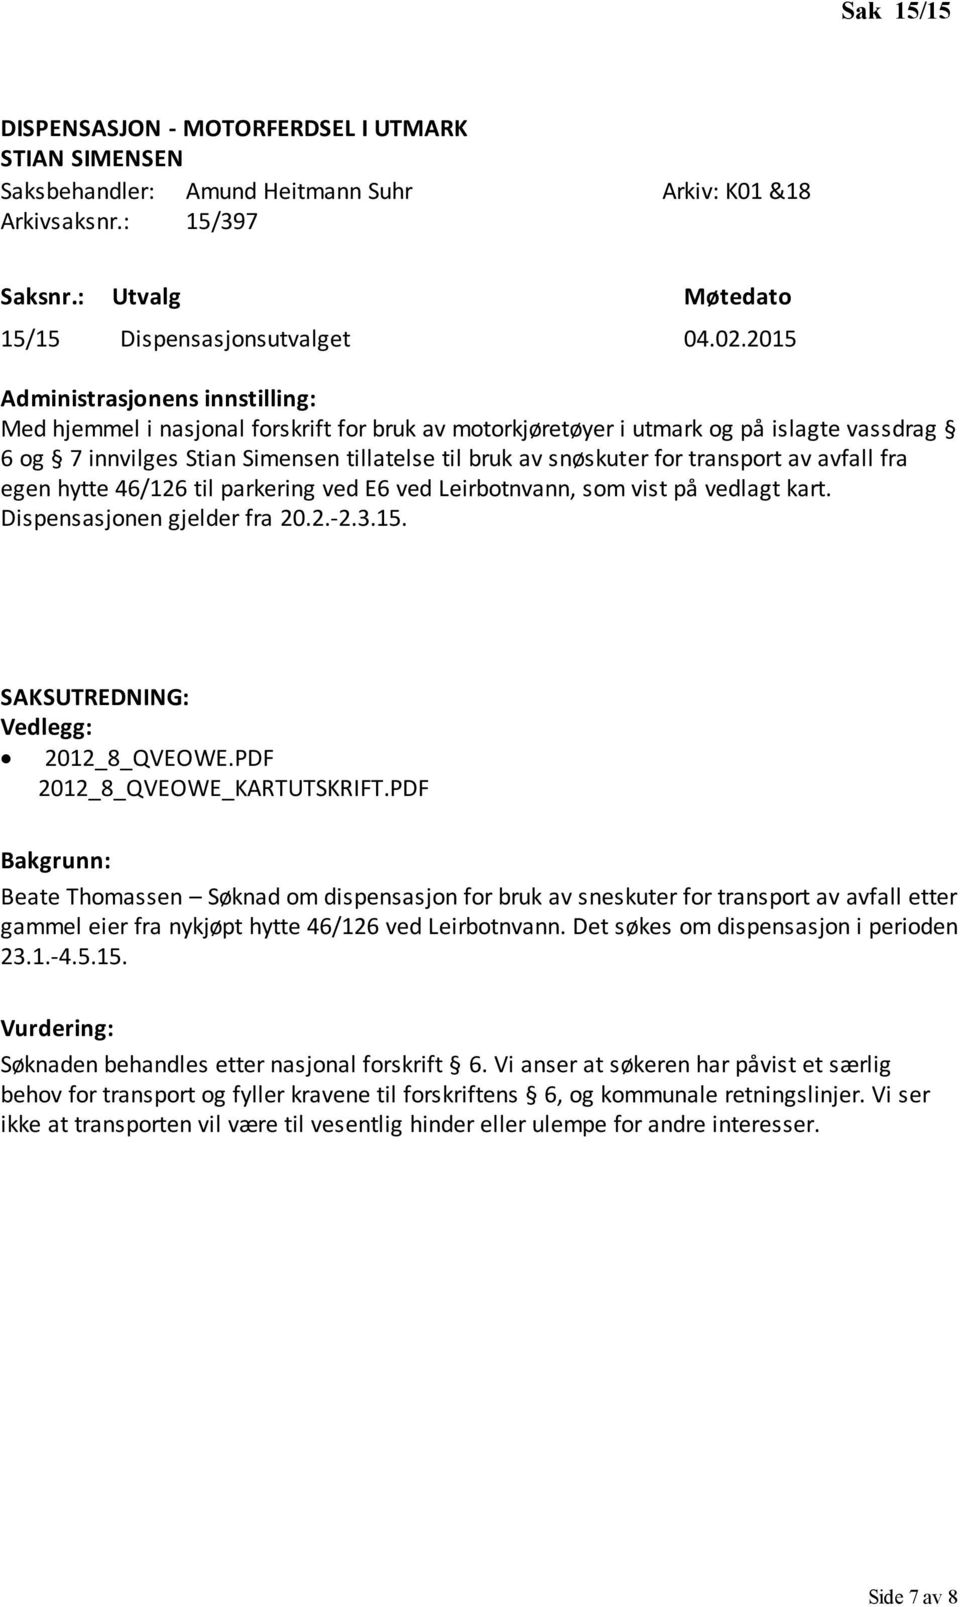 hytte 46/126 til parkering ved E6 ved Leirbotnvann, som vist på vedlagt kart. Dispensasjonen gjelder fra 20.2.-2.3.15. 2012_8_QVEOWE.PDF 2012_8_QVEOWE_KARTUTSKRIFT.